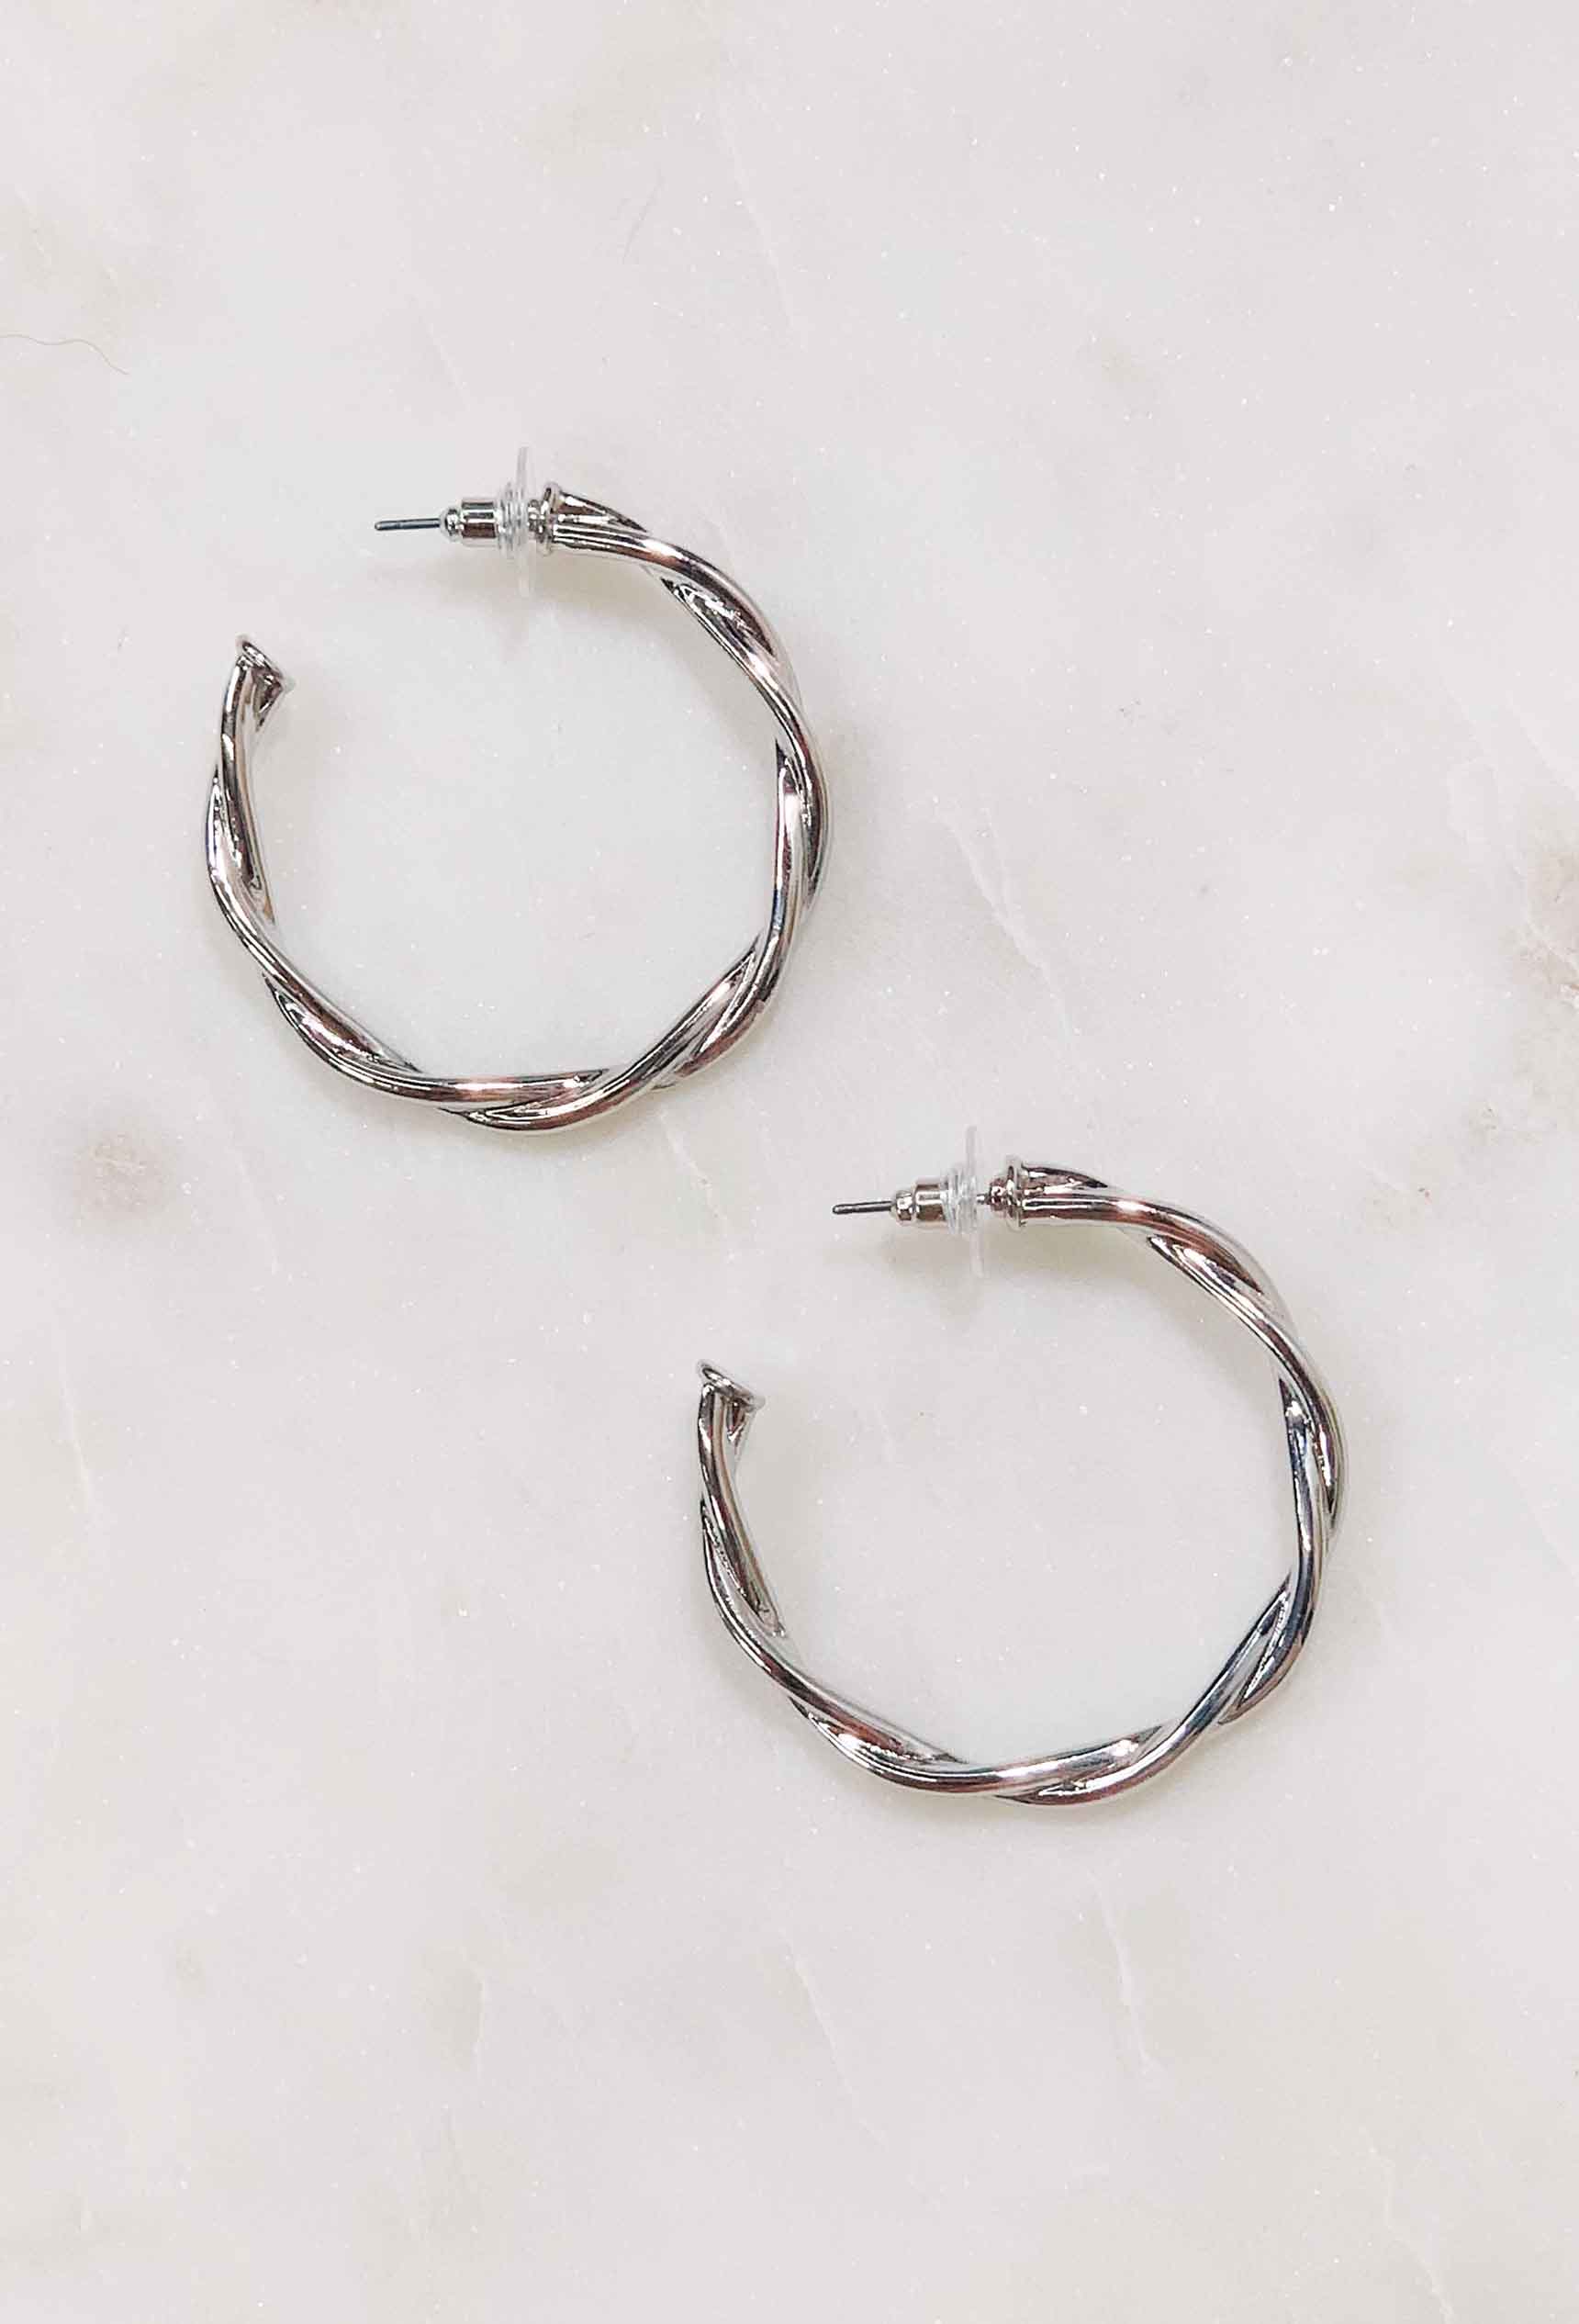 Twisted Hoop Earrings, twisted metal hoop earrings - silver and gold 